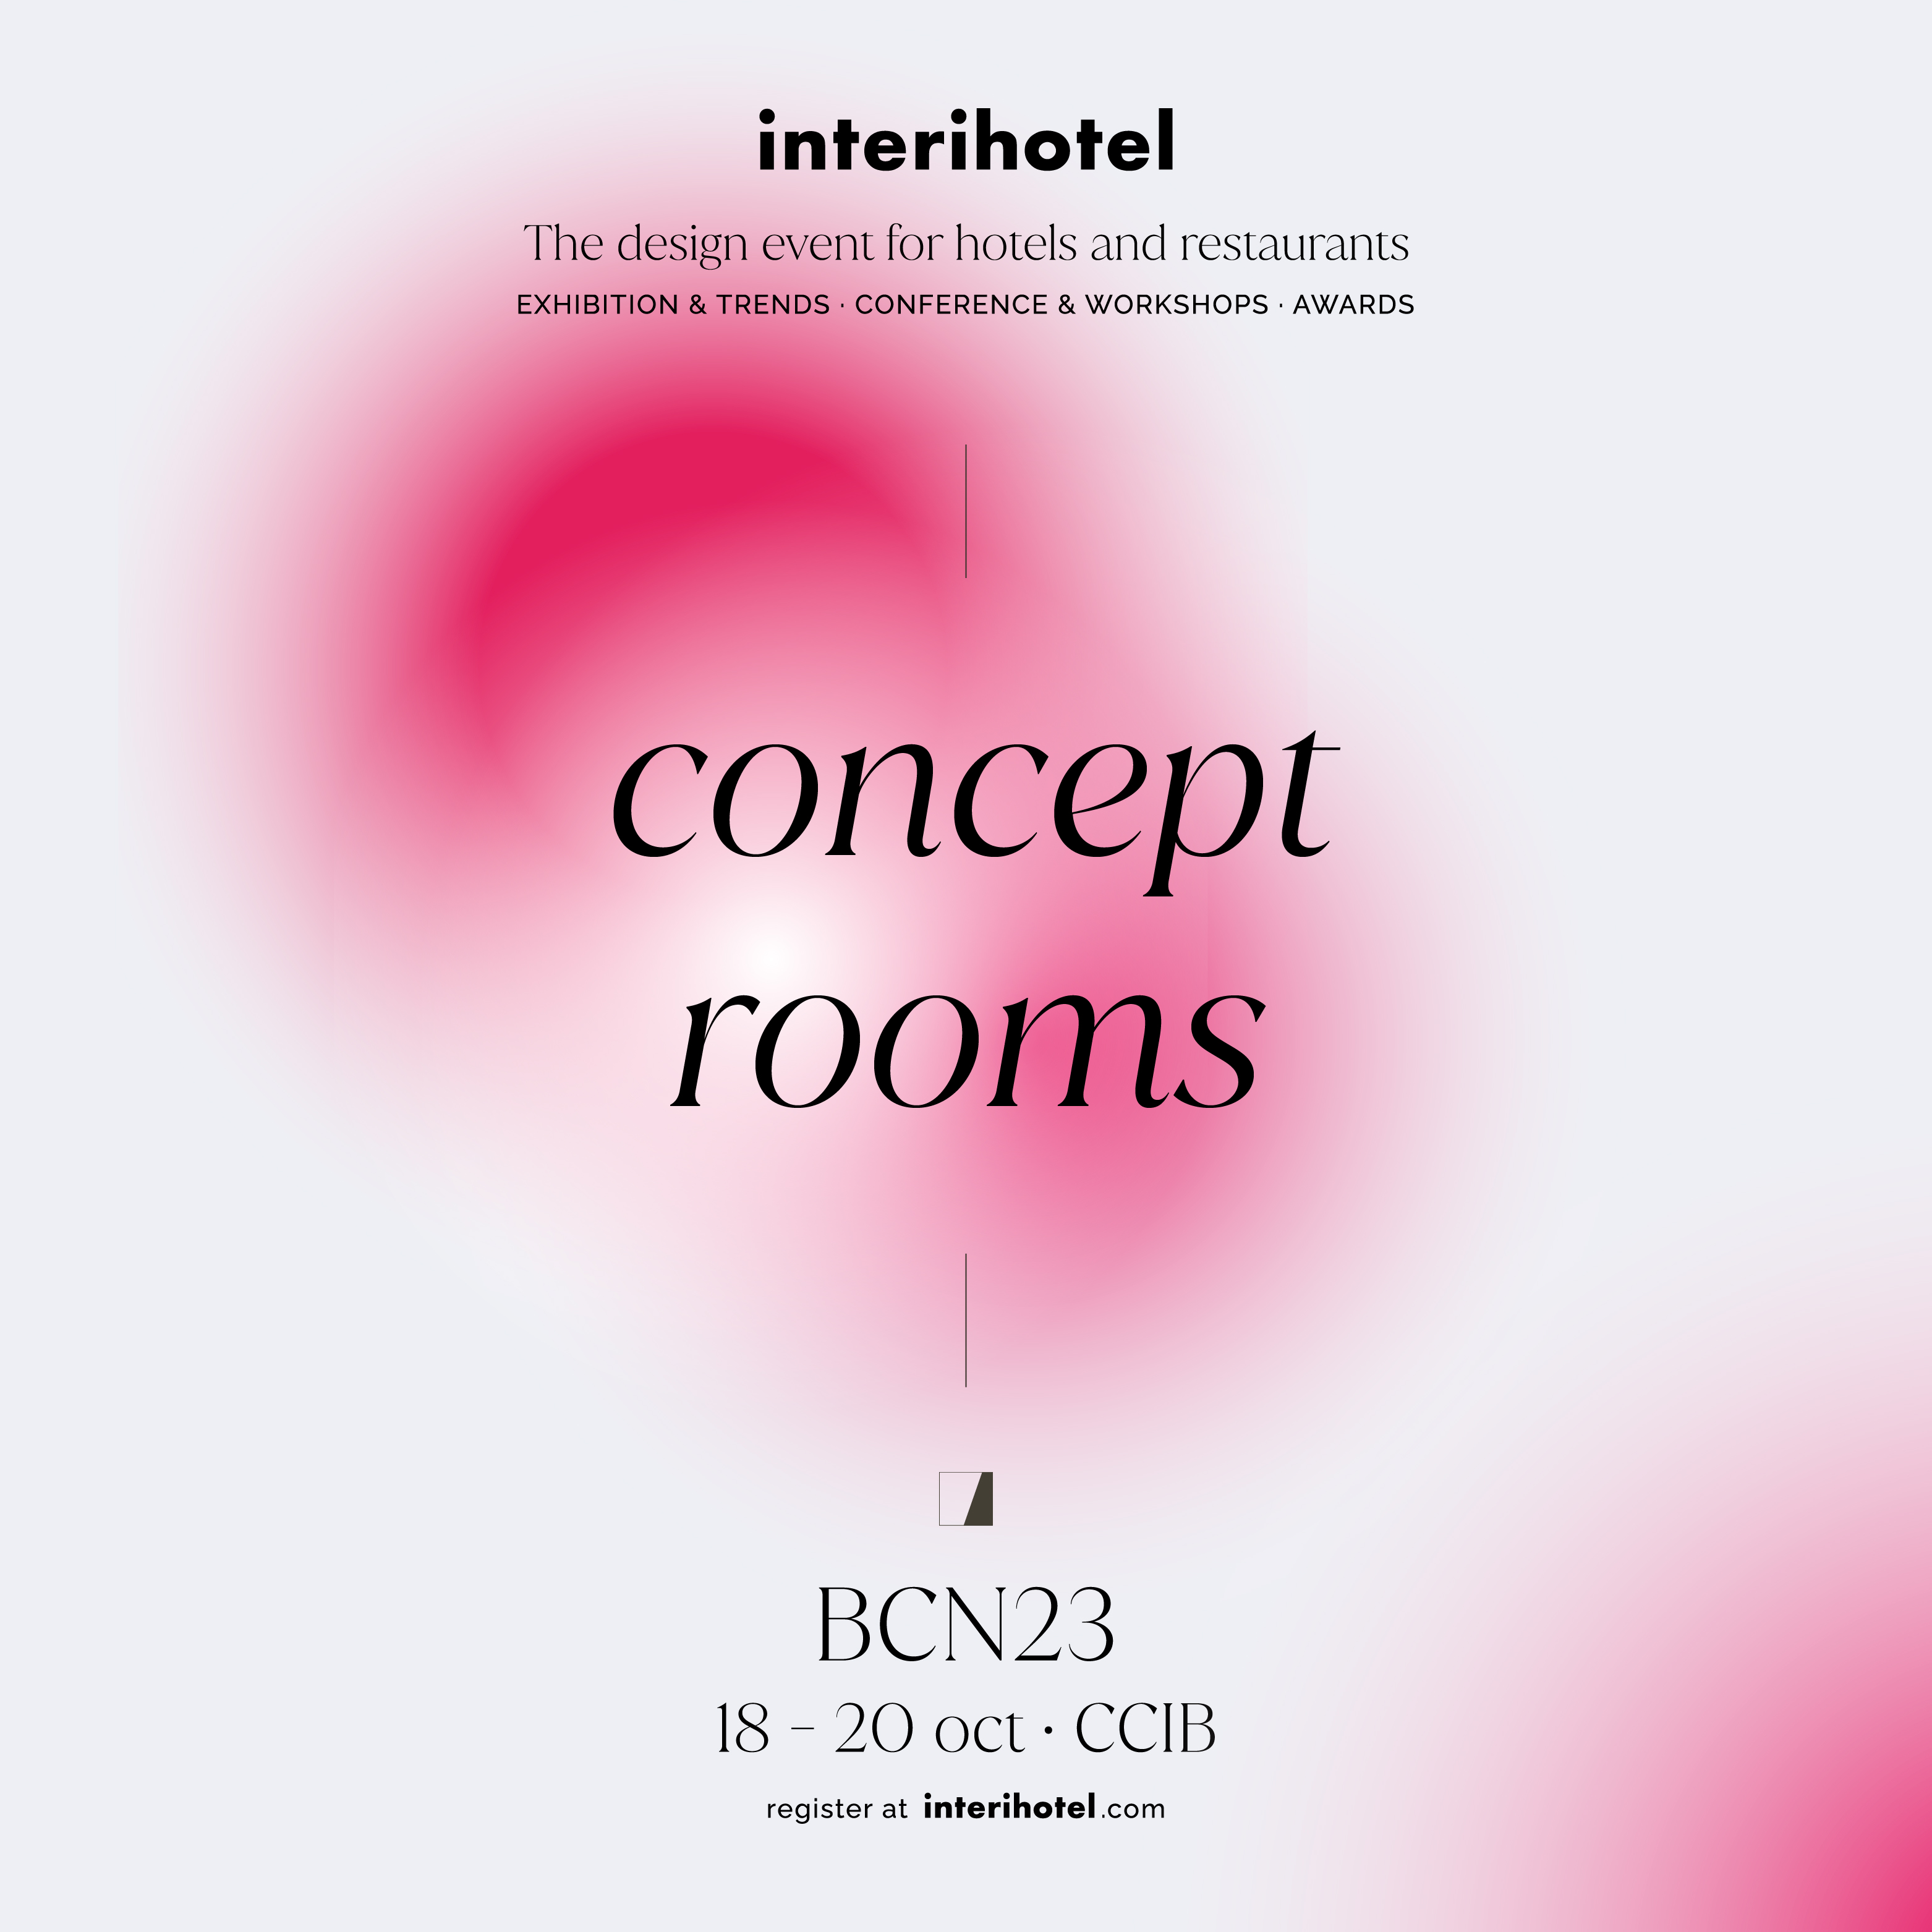 Presenta tu marca a 2 estudios de interiorismo TOP que diseñarán las Concept Rooms de interihotel